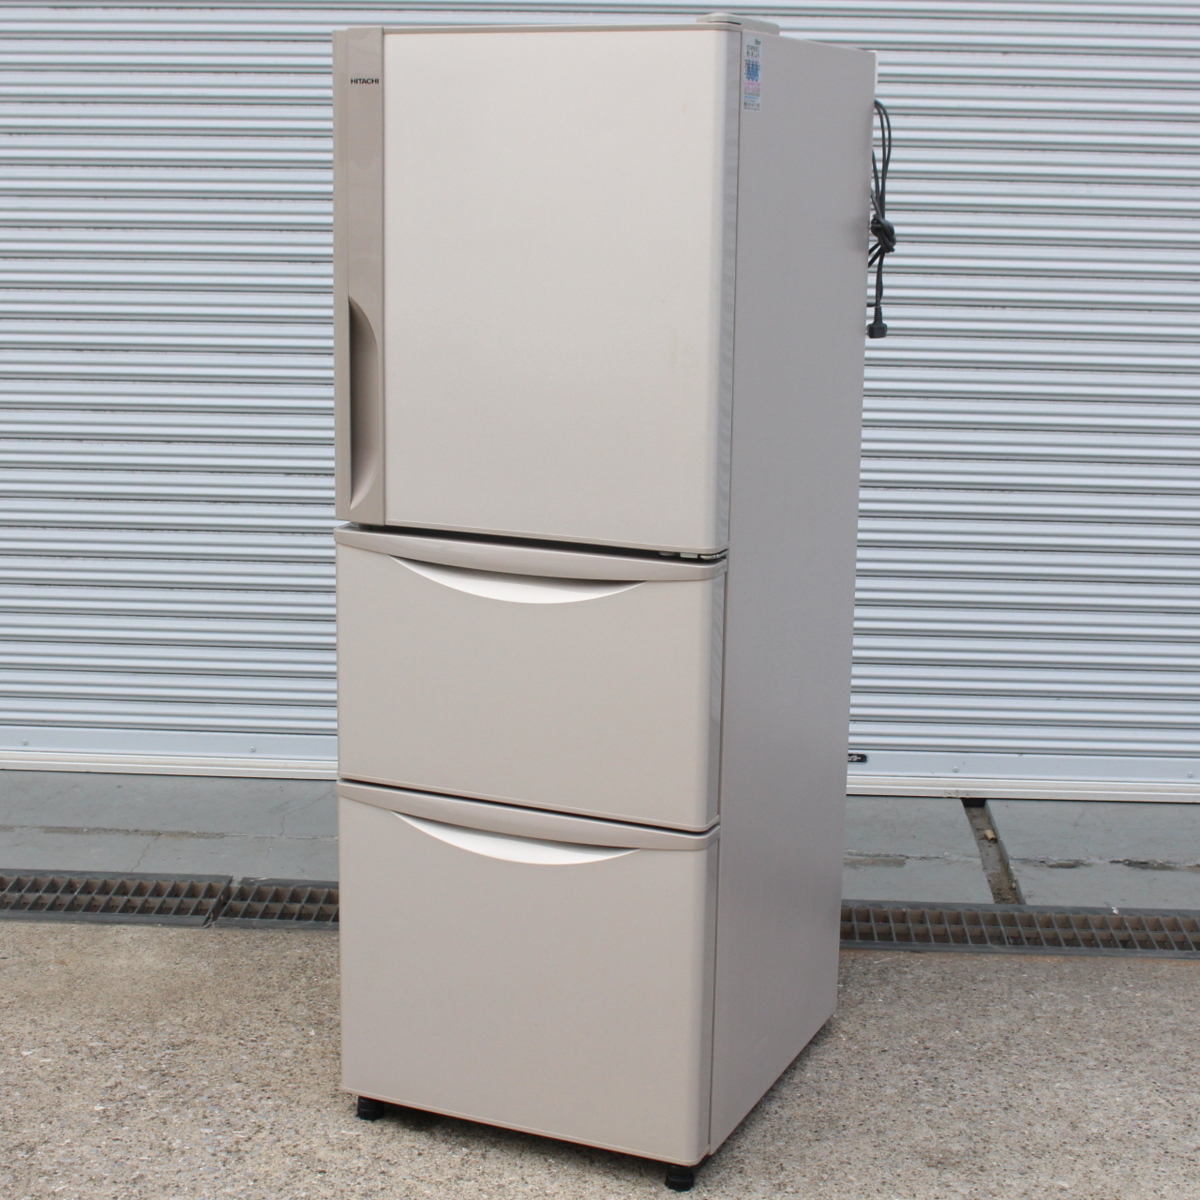 東京都江戸川区にて 日立 冷蔵庫 R-27FV 2015年製 を出張買取させて頂きました。